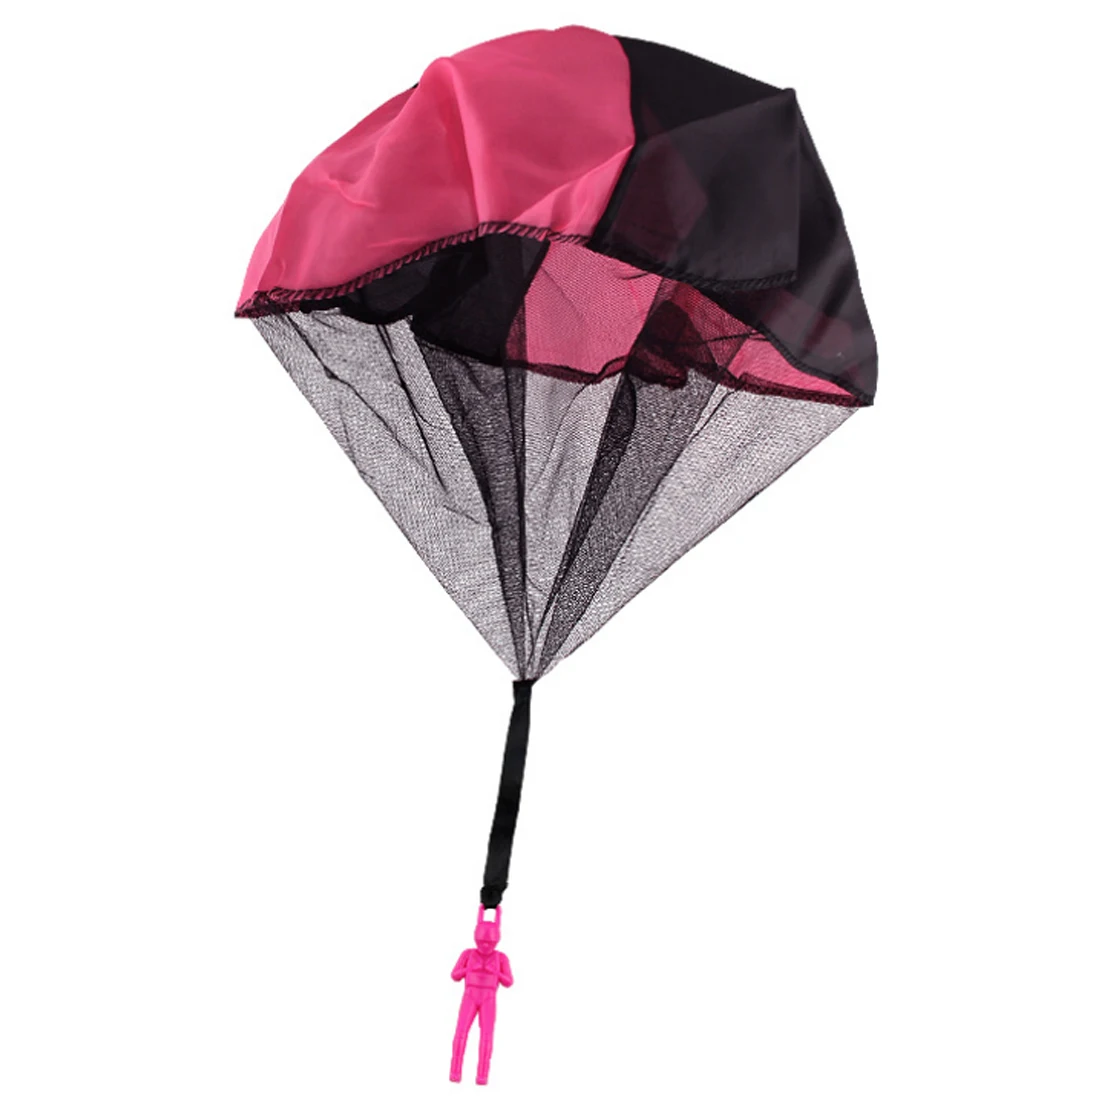 2 шт на Мини хватать руками парашют дети летающие игрушки солдат уличные виды спорта для обучающих детей подарок-розовый